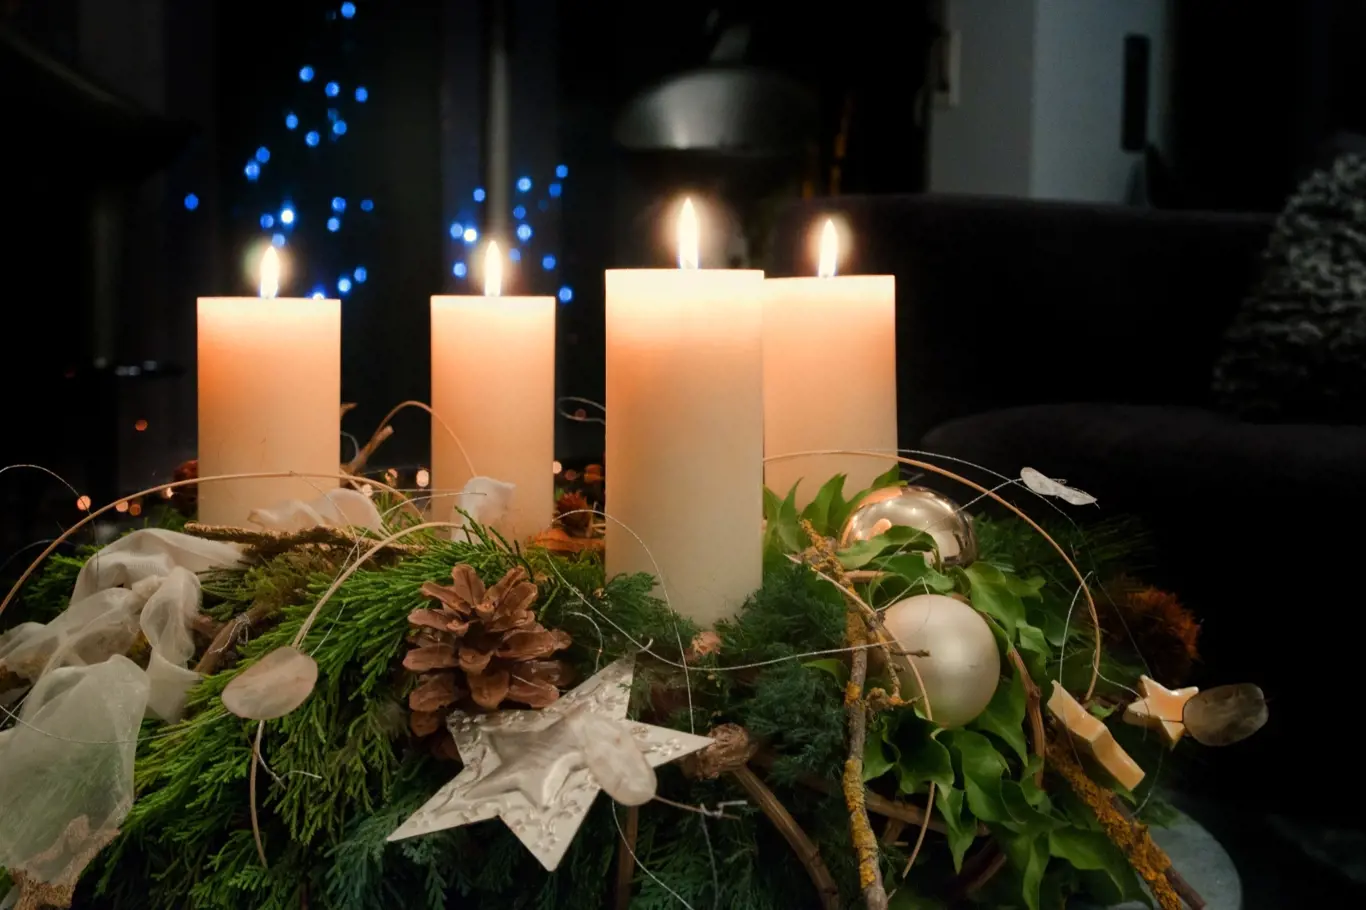 Čtyři hořící svíce charakterizují uzavření kruhu, tedy adventu, a příchod Vánoc.